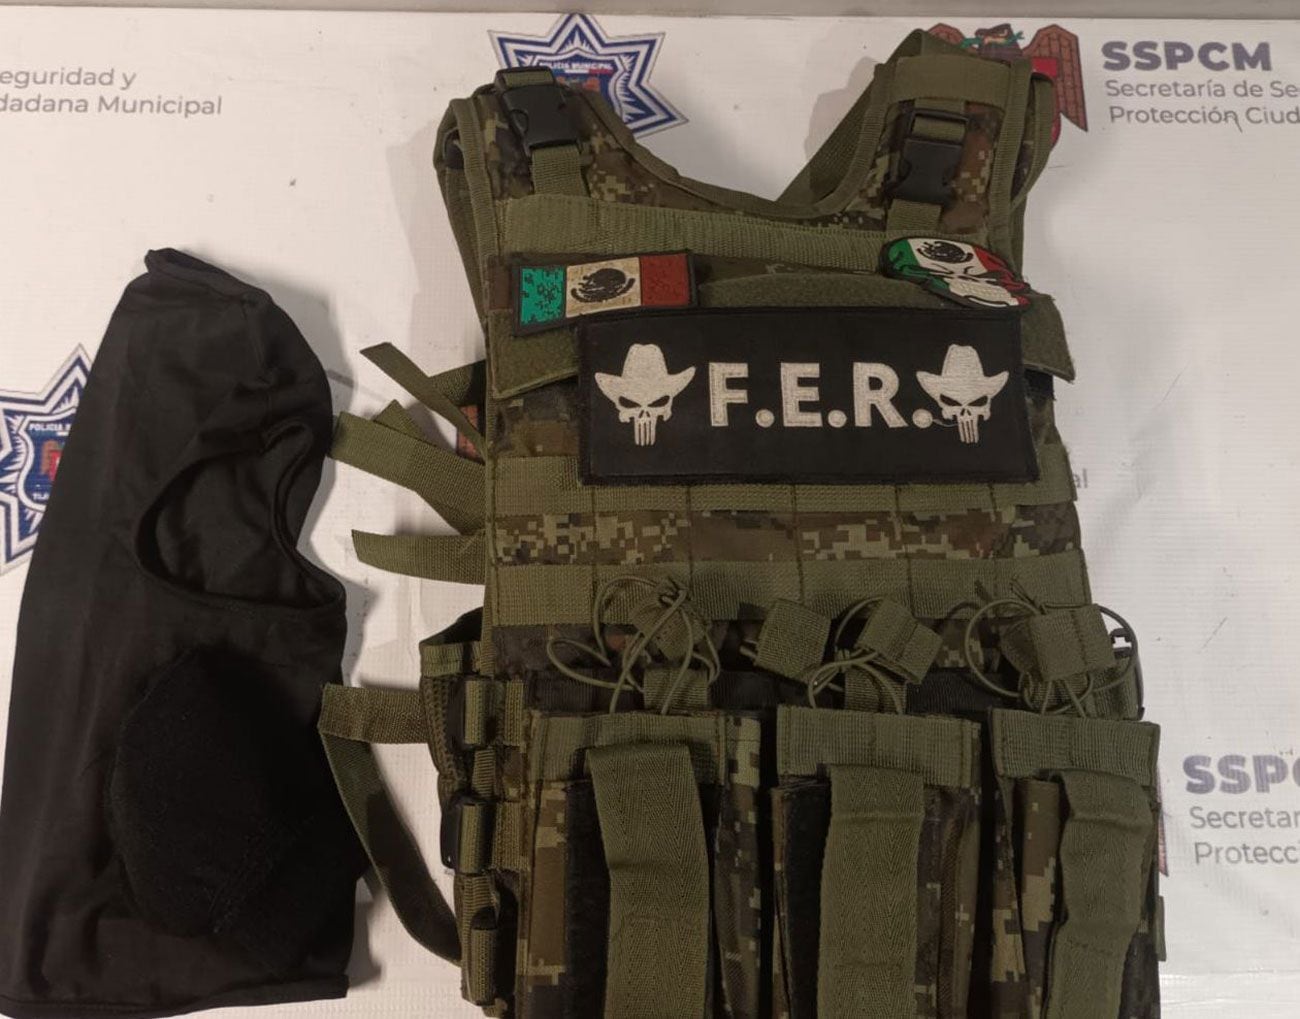 El chaleco que portaba el detenido tenía las siglas “F.E.R”, al parecer en alusión a un grupo delictivo.